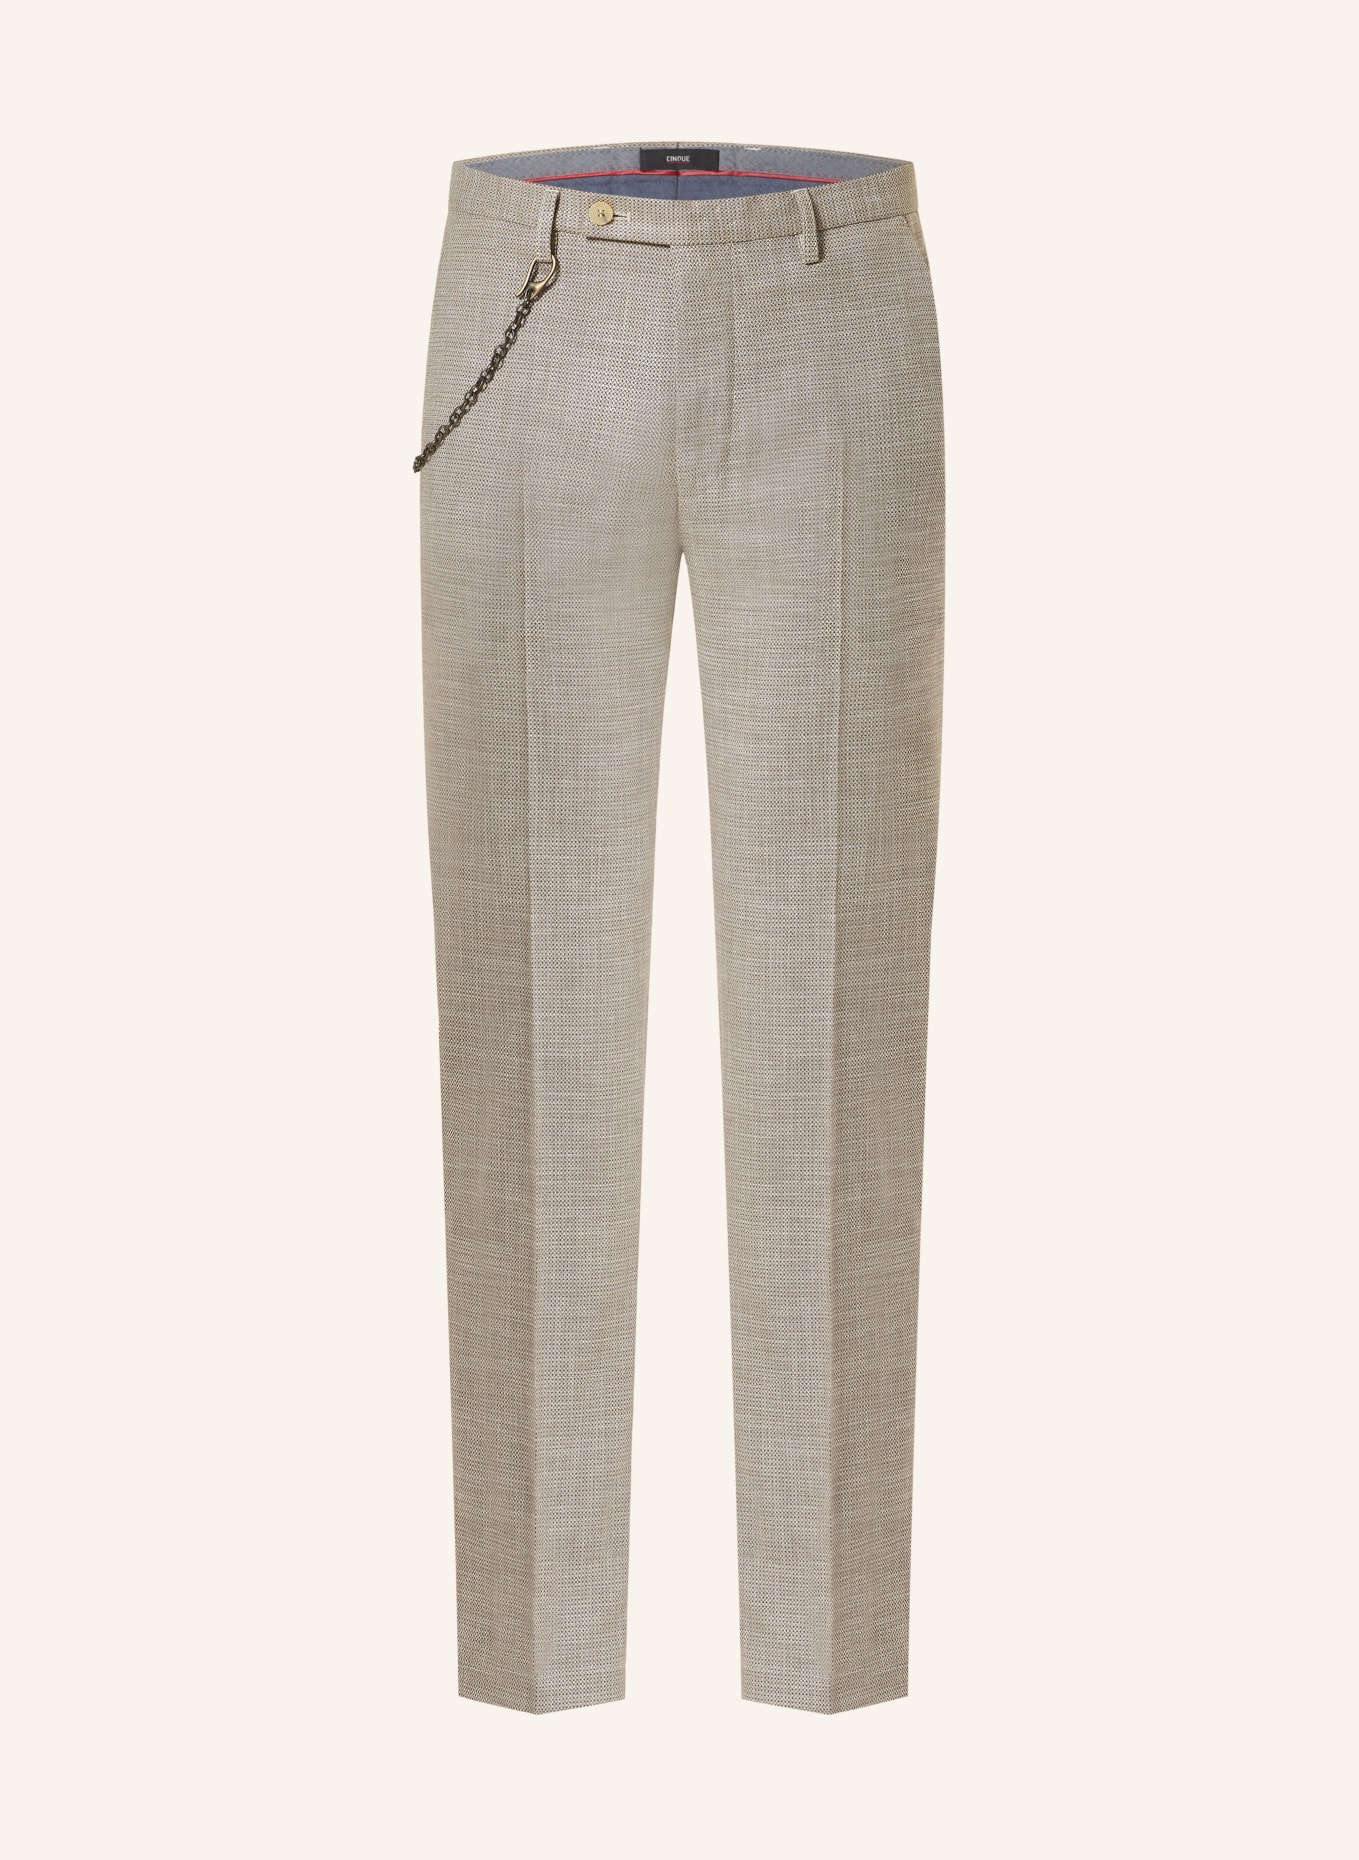 CINQUE Anzughose CIBRAVO Slim Fit, Farbe: 23 BRAUN (Bild 1)